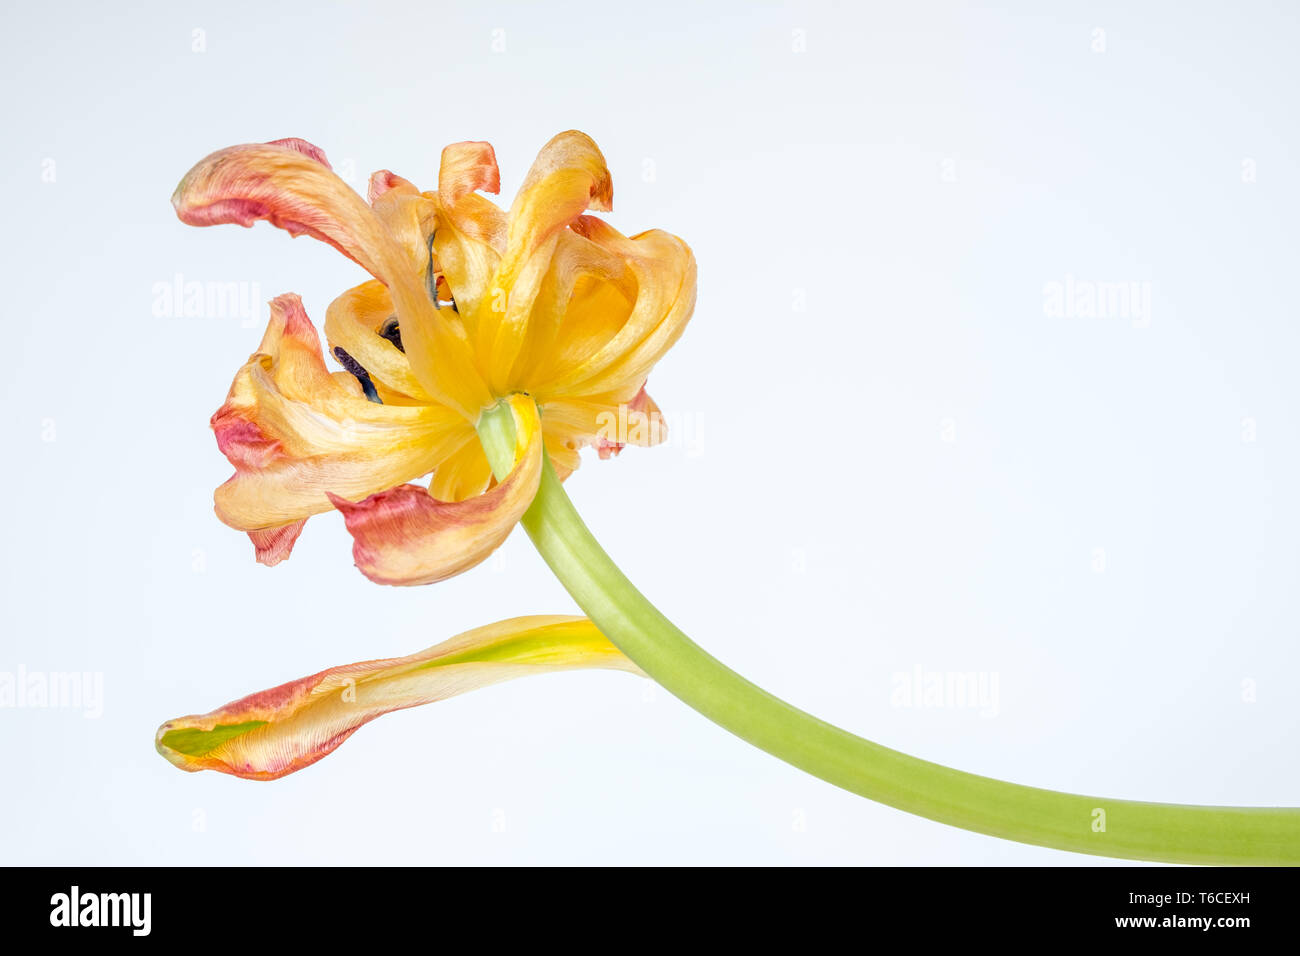 Pétales de tulip - isolé contre fond blanc - à commencer à s'enrouler et se fanent tandis que la fleur vieillit avec élégance Banque D'Images